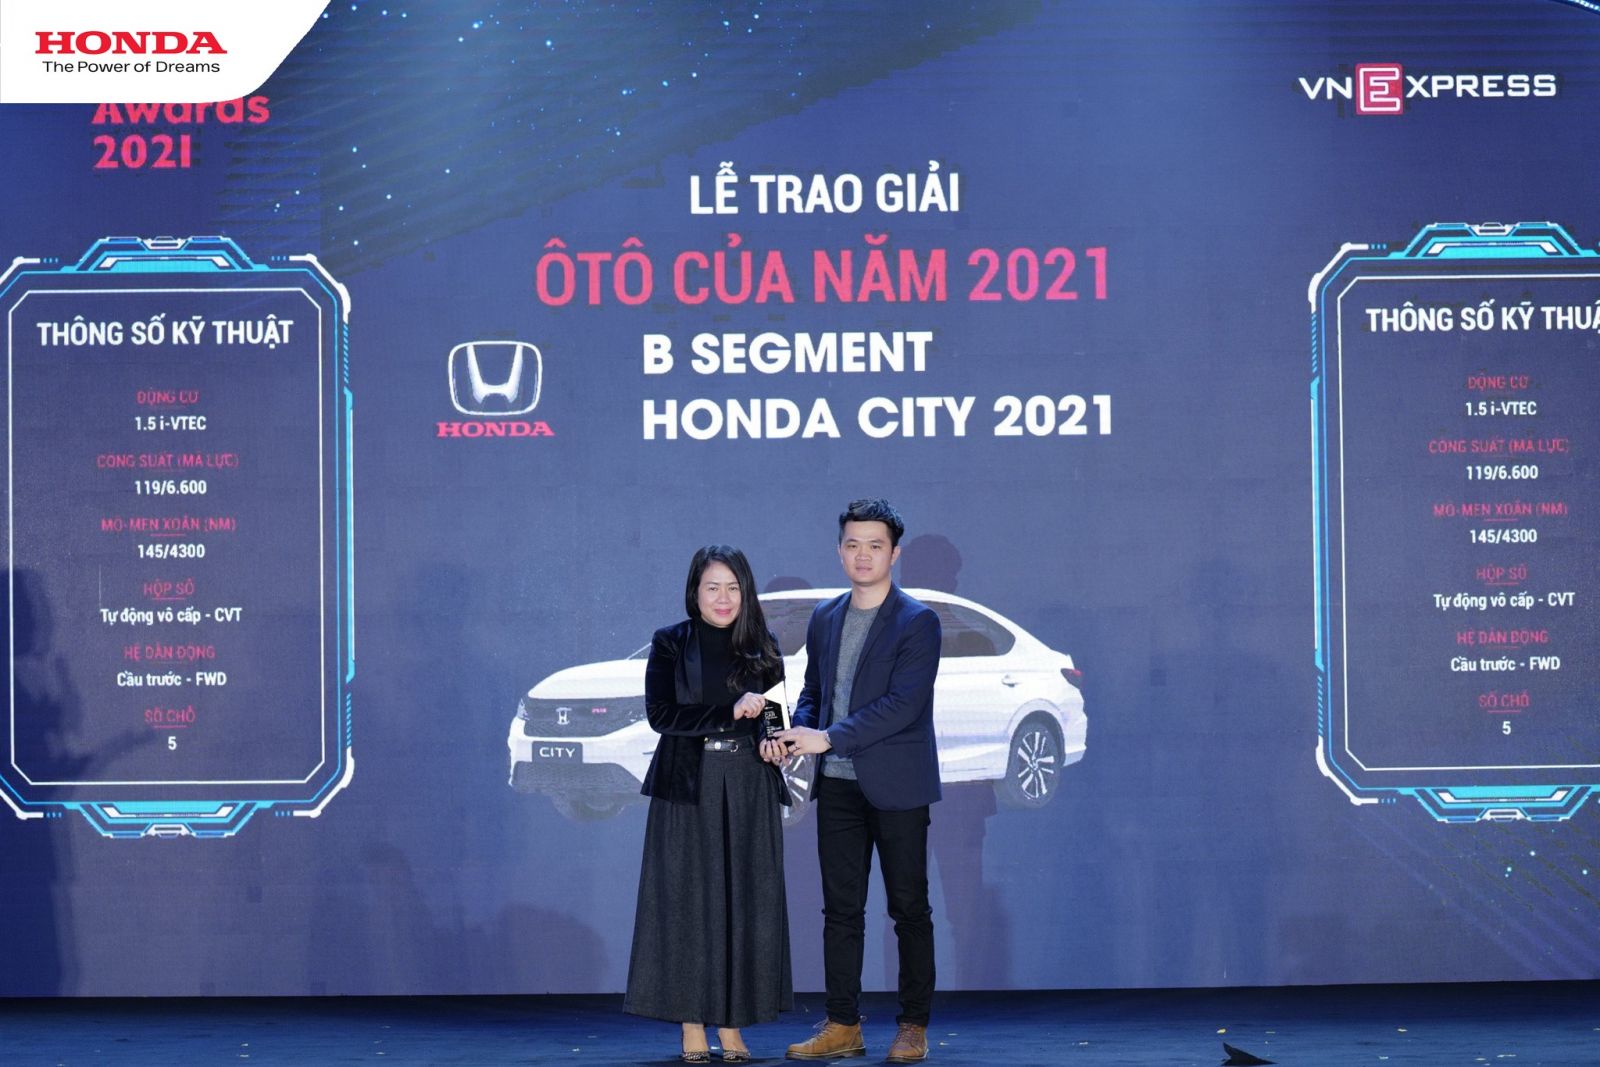 Honda City được đánh giá là "Ôtô của năm" phân khúc gầm thấp cỡ B tại Giải thưởng Car Awards 2021 do VnExpress tổ chức